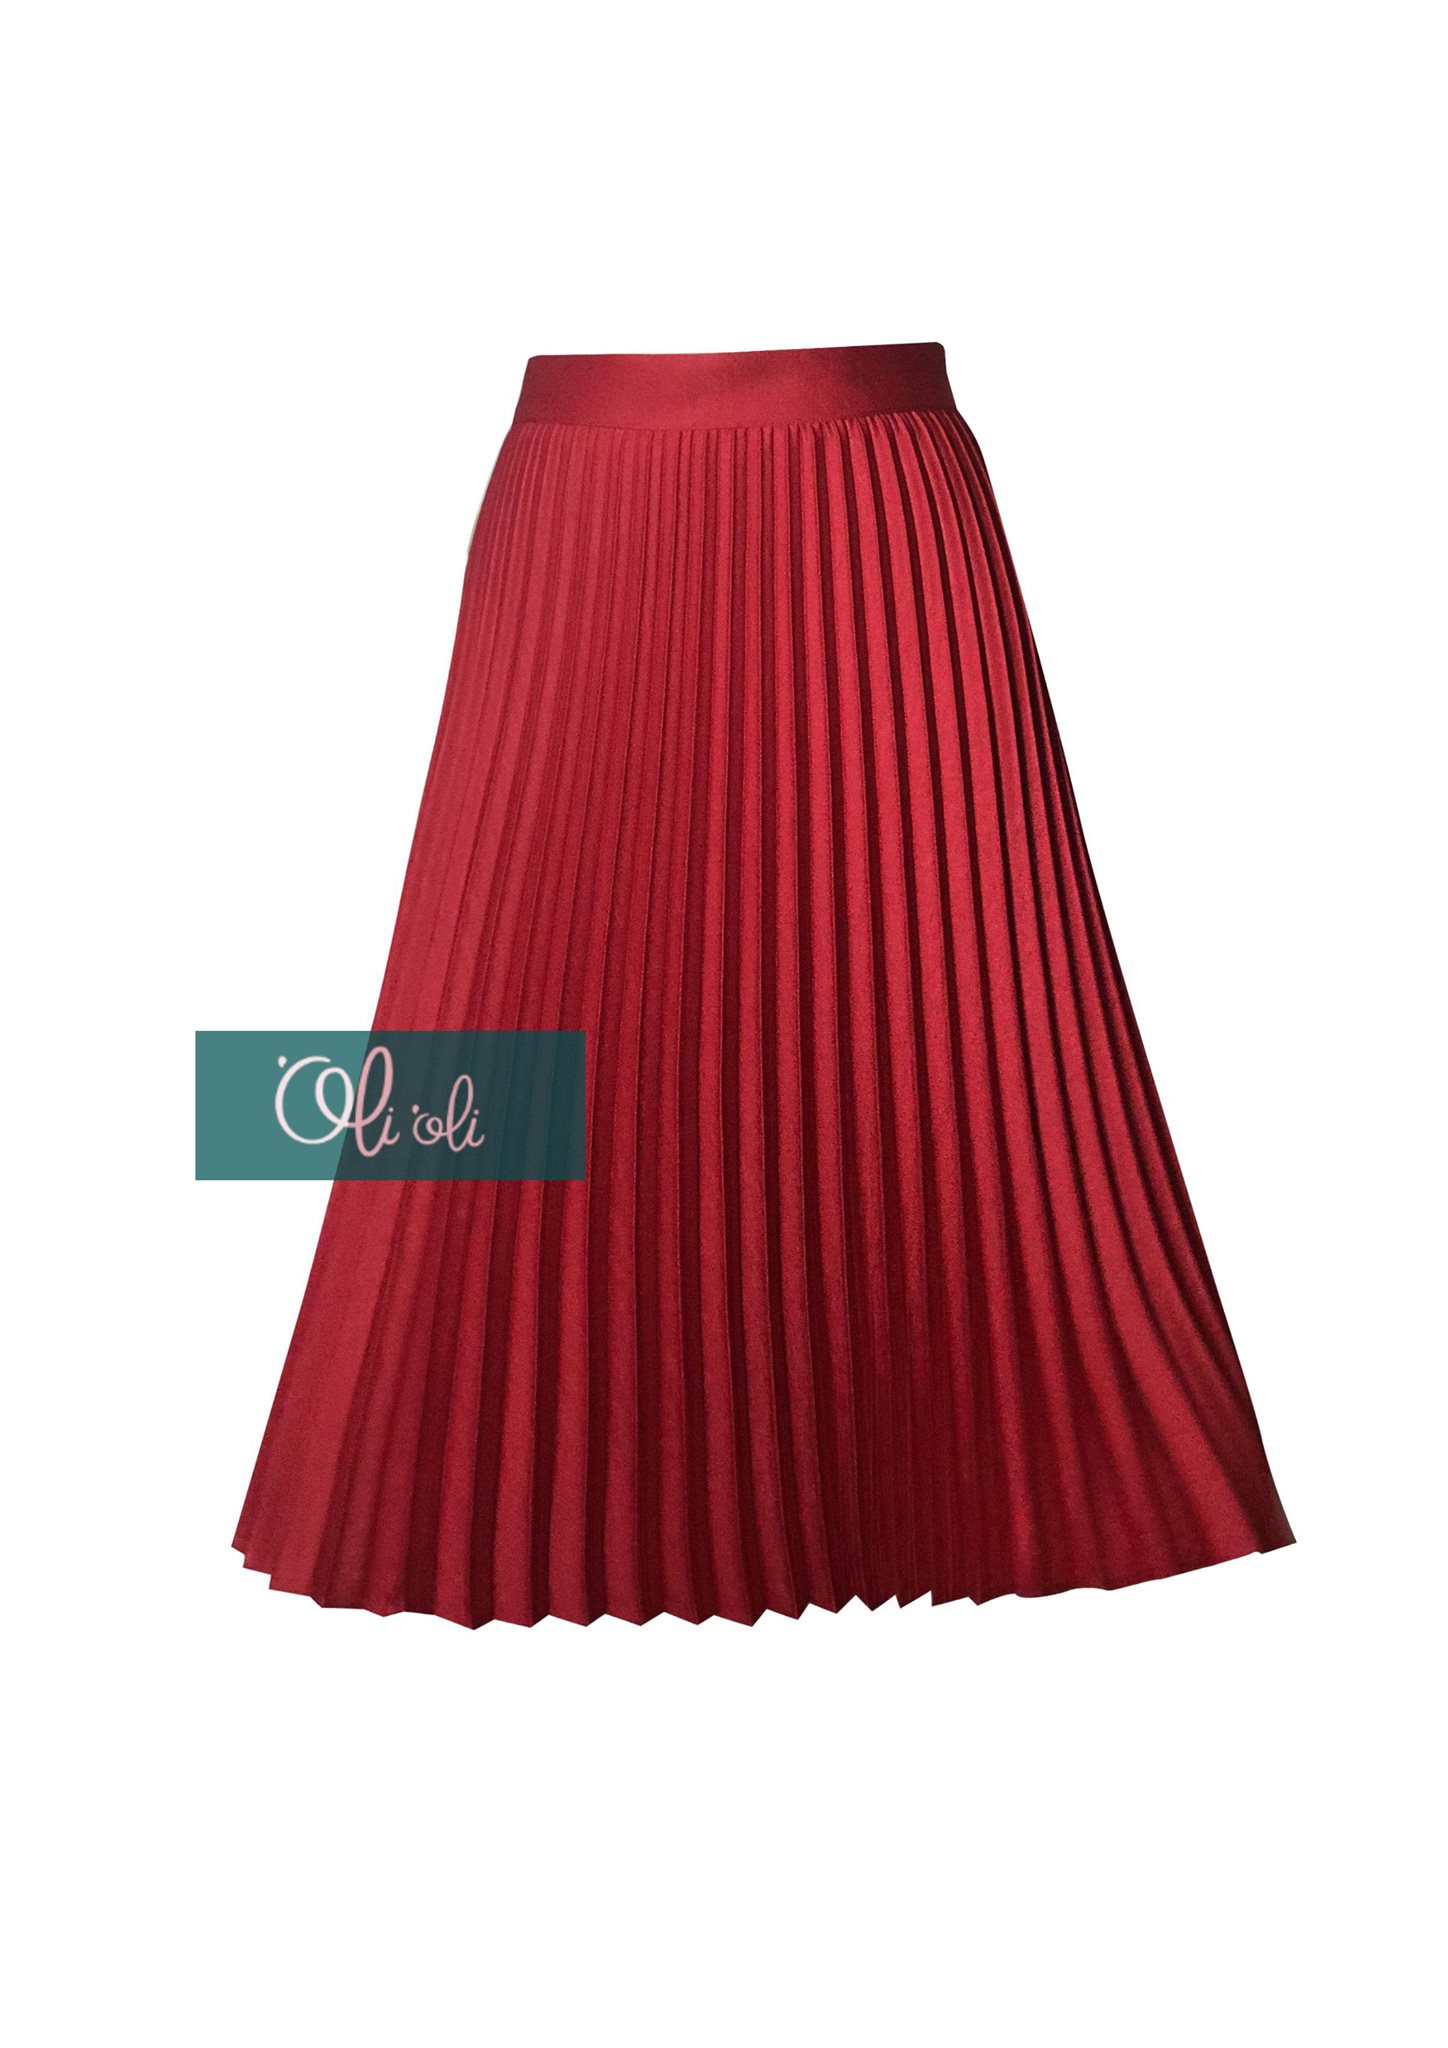 Chân váy midi xòe xếp ly màu đỏ CV0335  Thời trang công sở KK Fashion